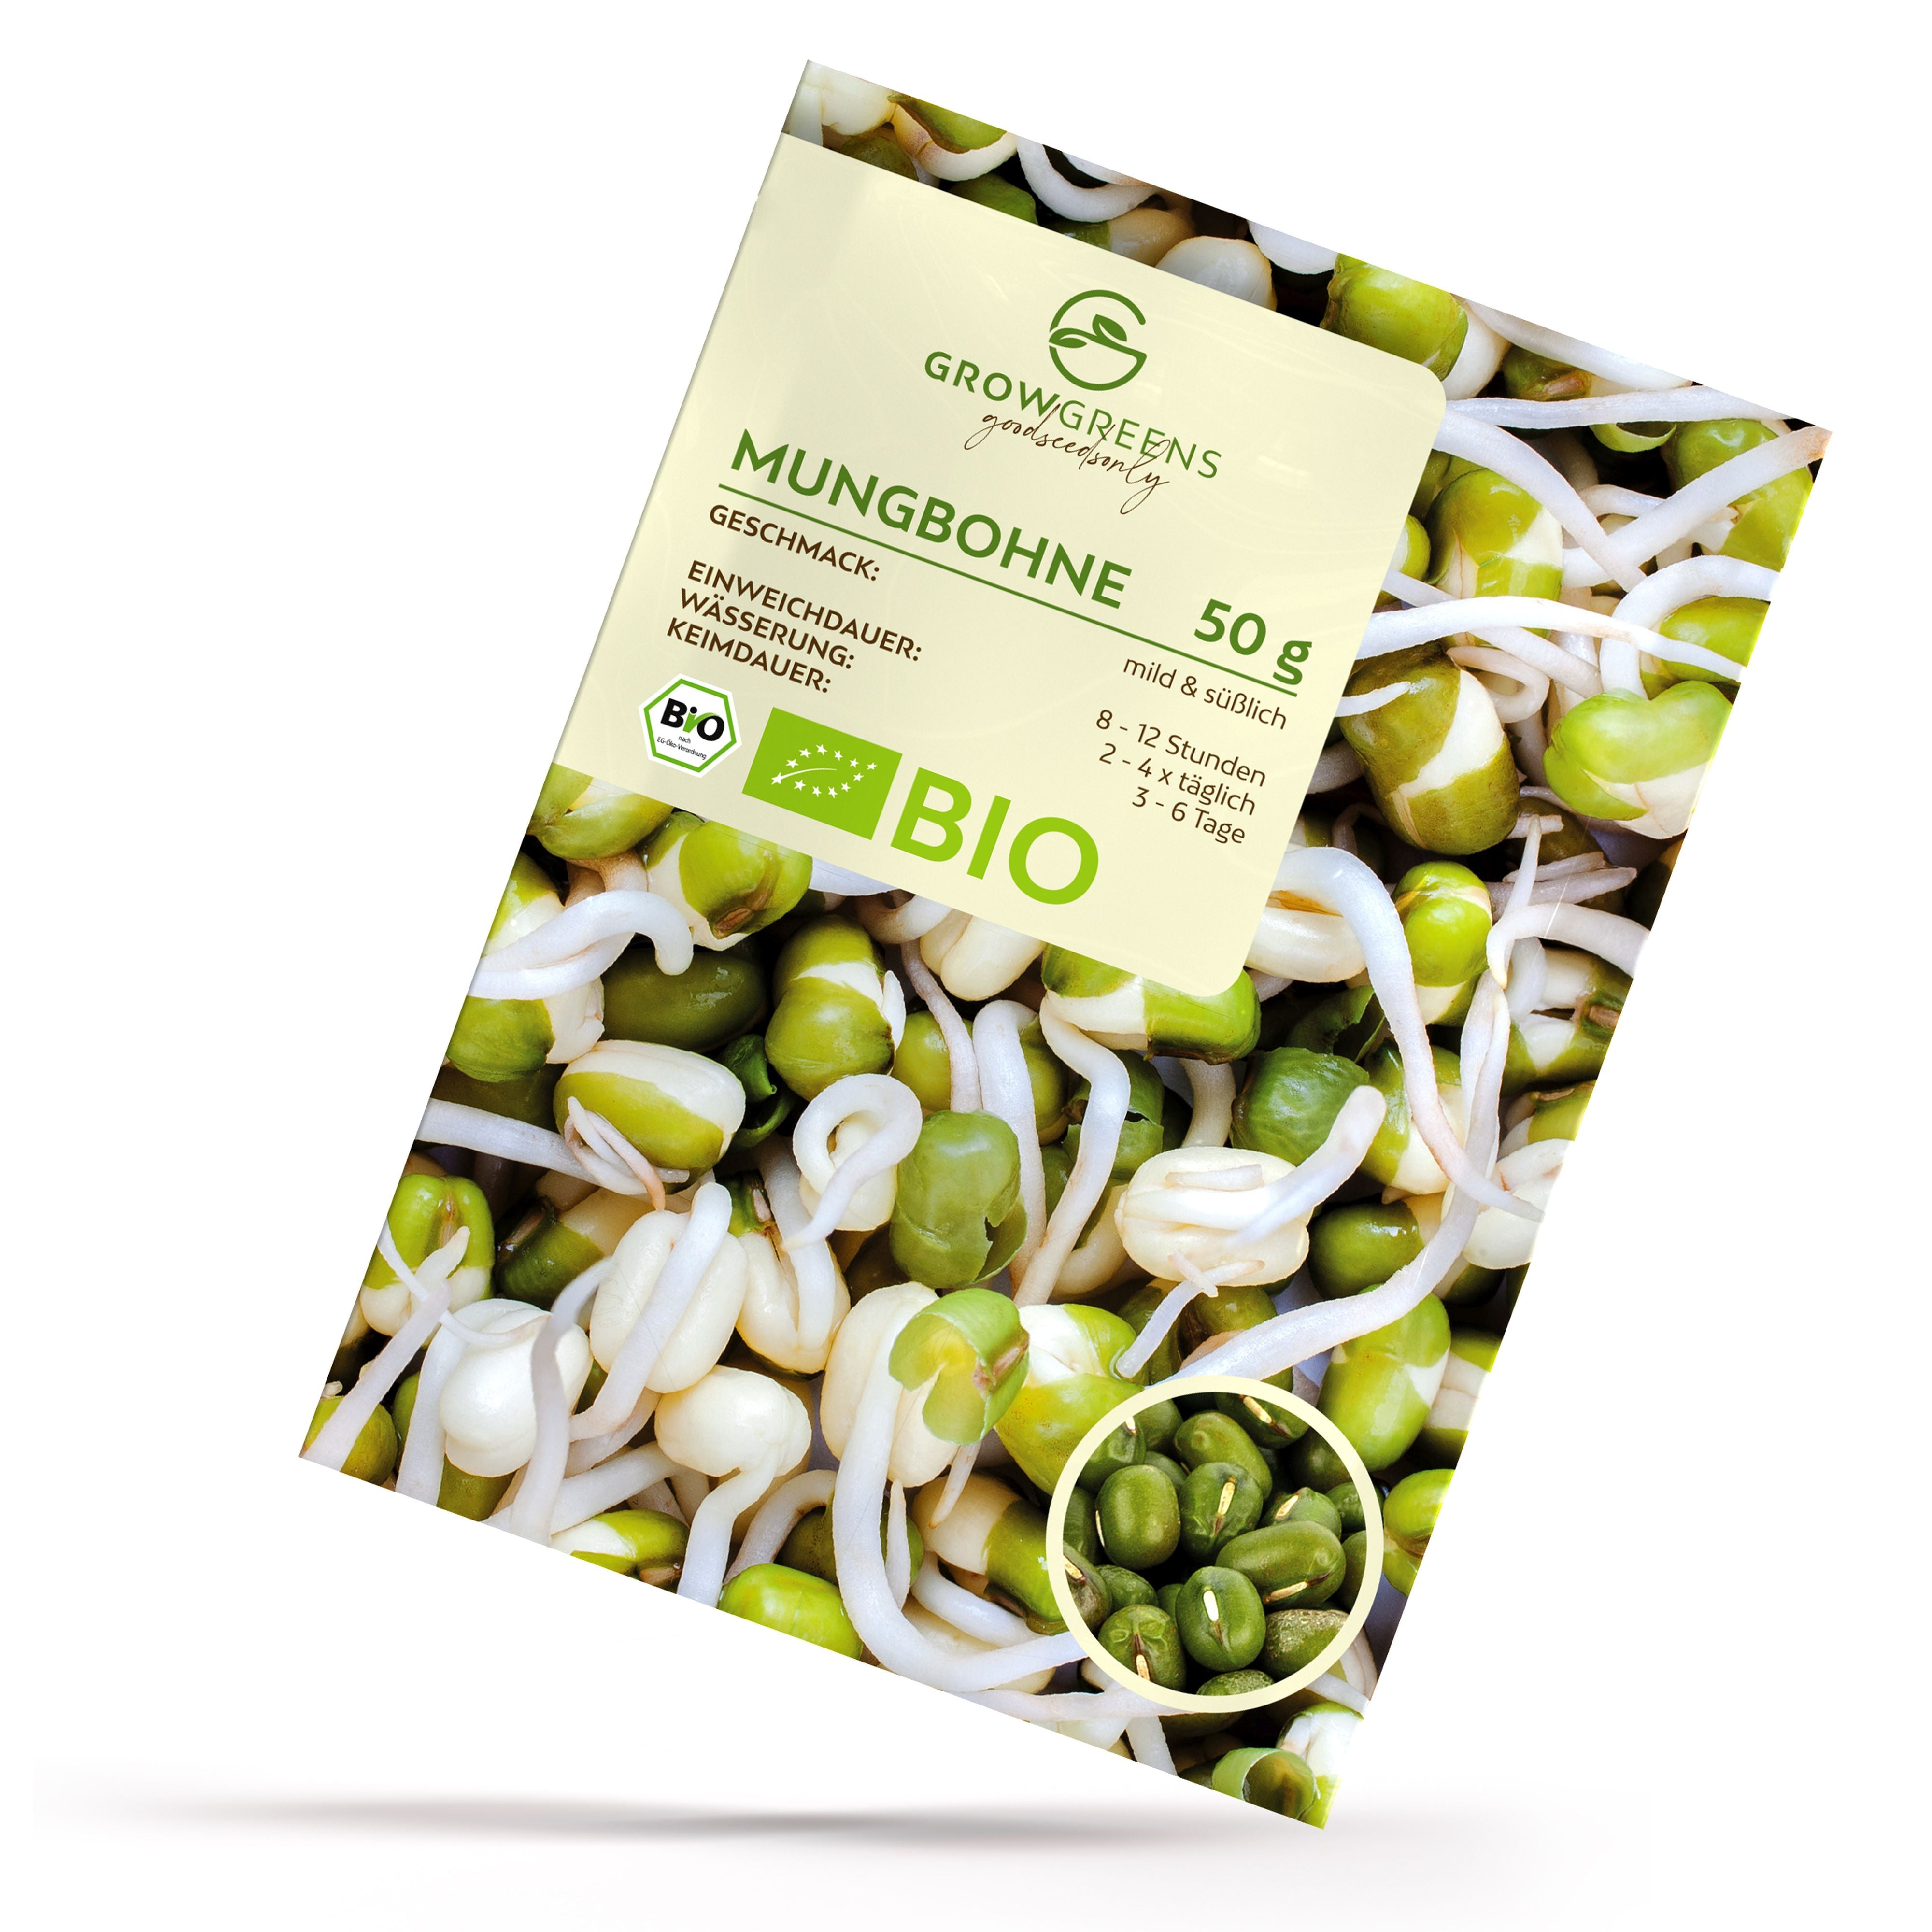 BIO Mungbohne Sprossen Samen (50g) - Microgreens Saatgut ideal für die Anzucht von knackigen Keimsprossen